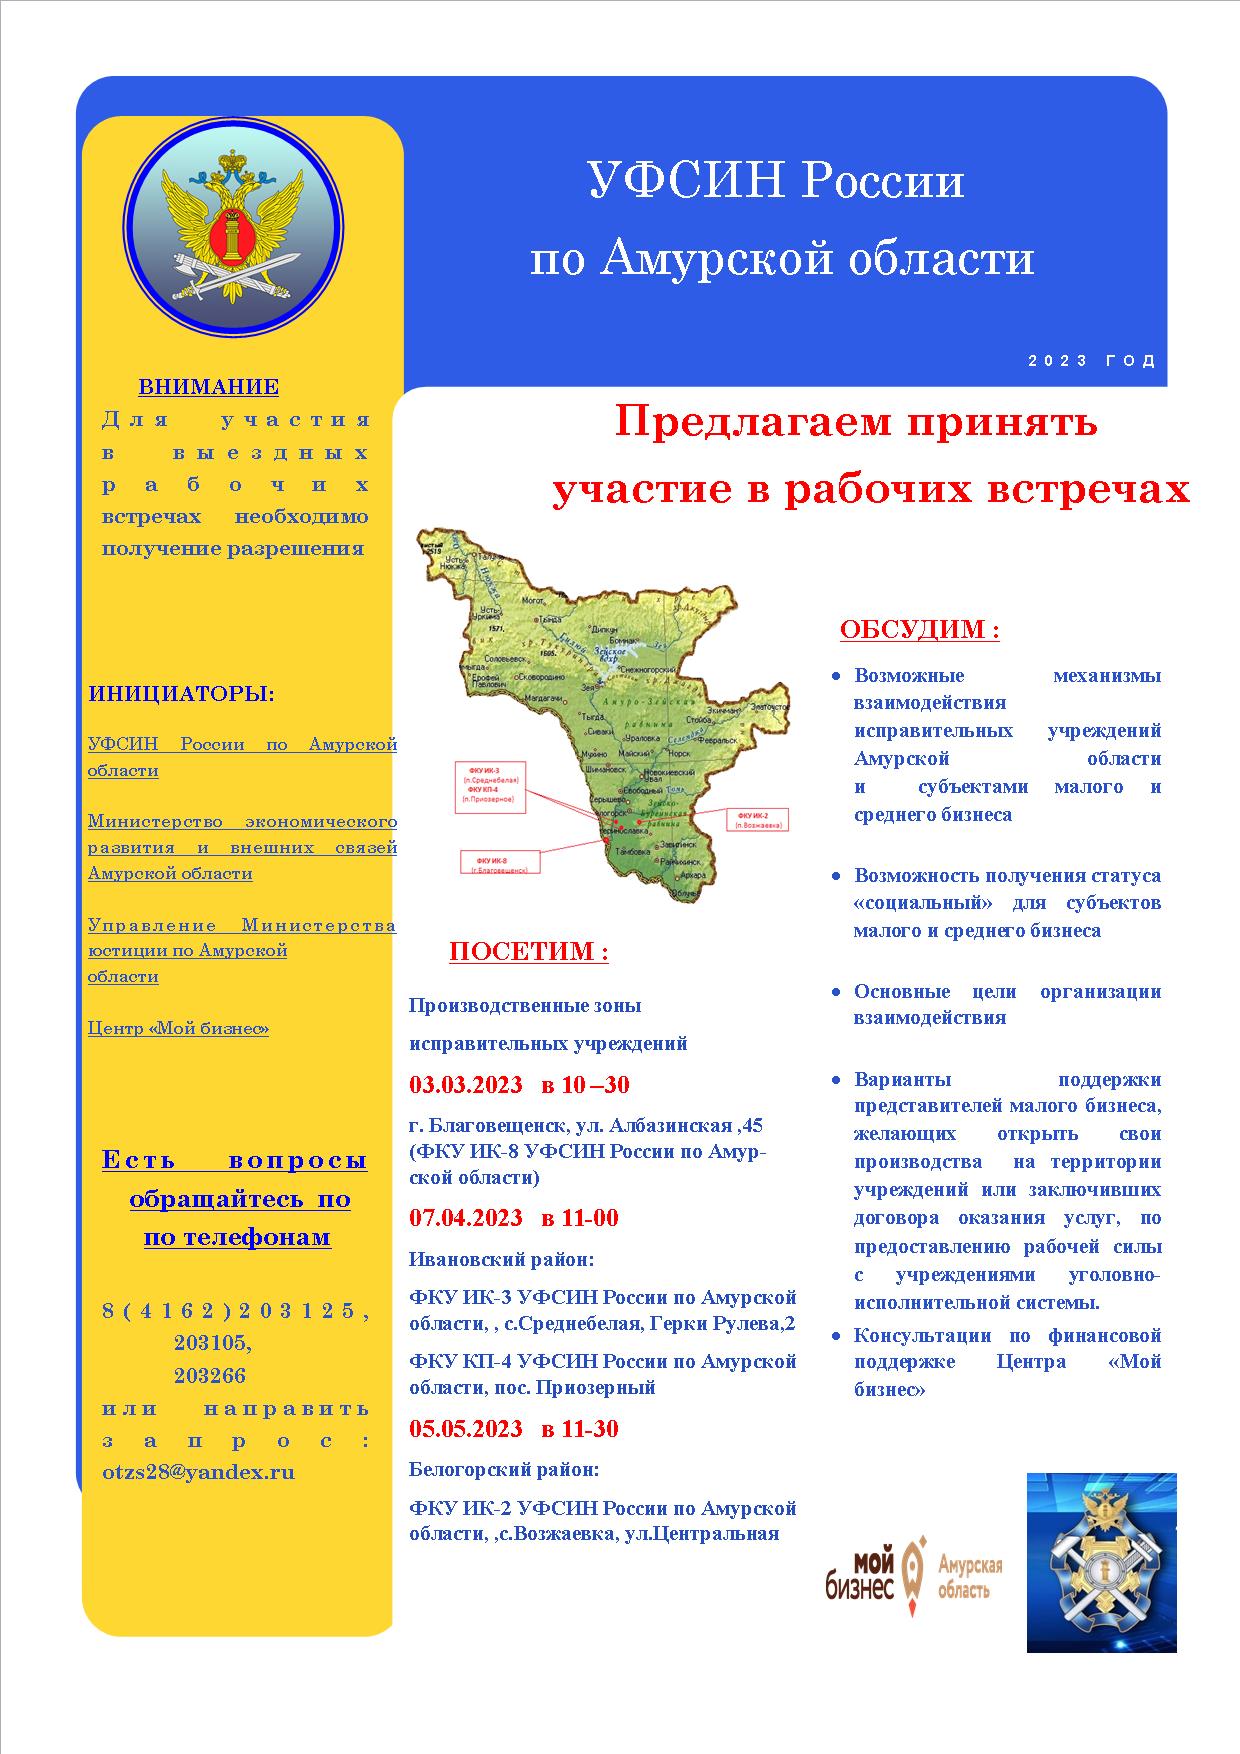 УФСИН России по Амурской области приглашает принять участие в рабочих встречах